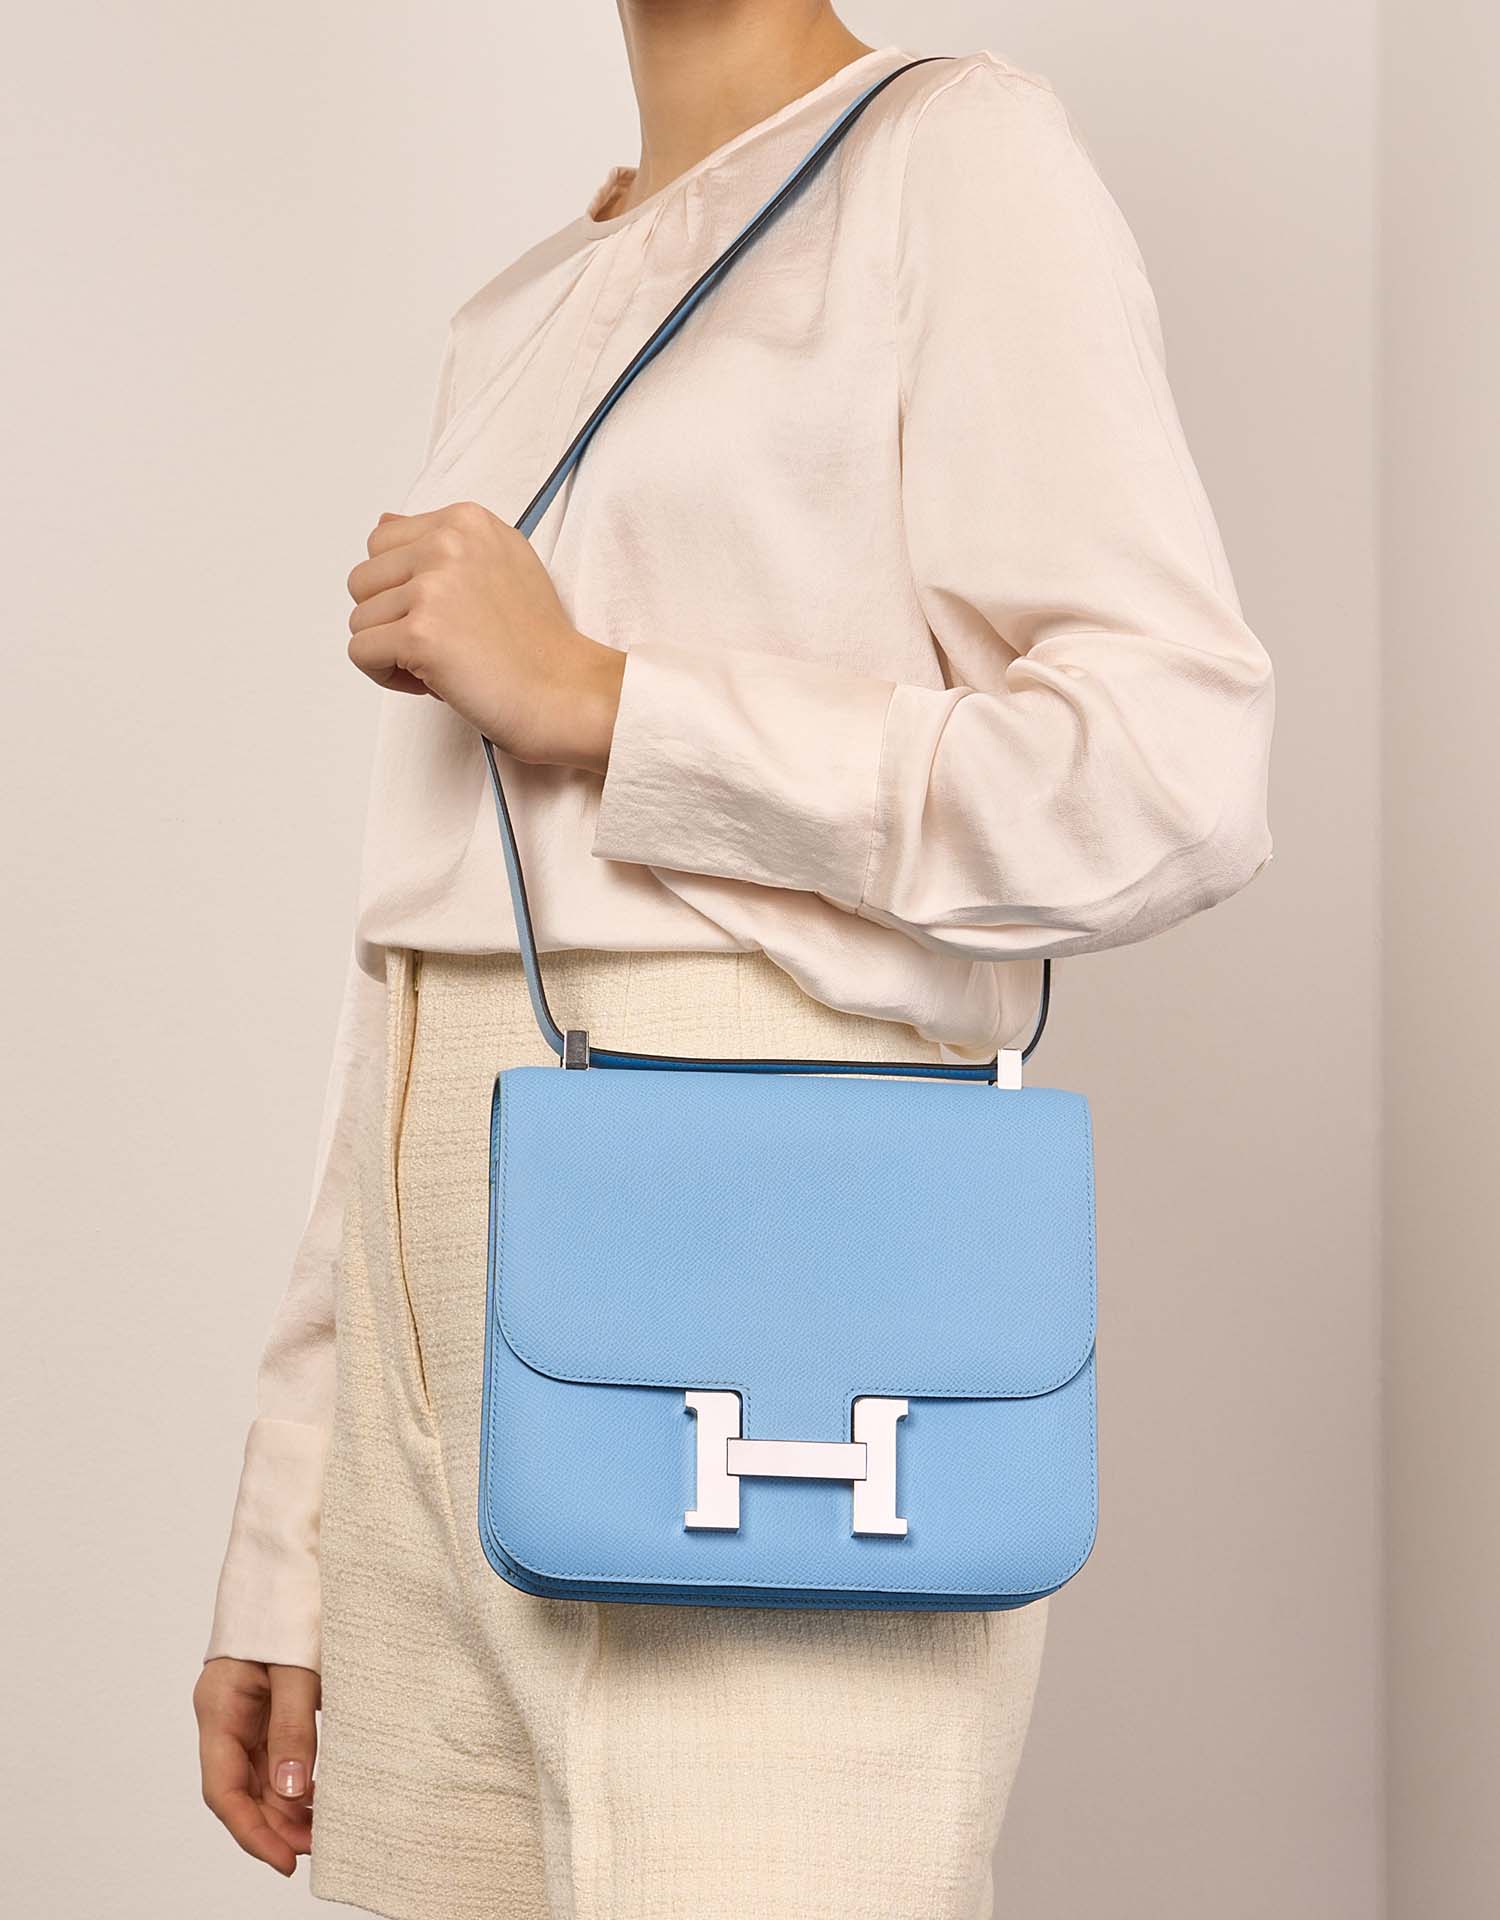 Hermès Constance 24 Celeste Sizes Worn | Sell your designer bag on Saclab.com